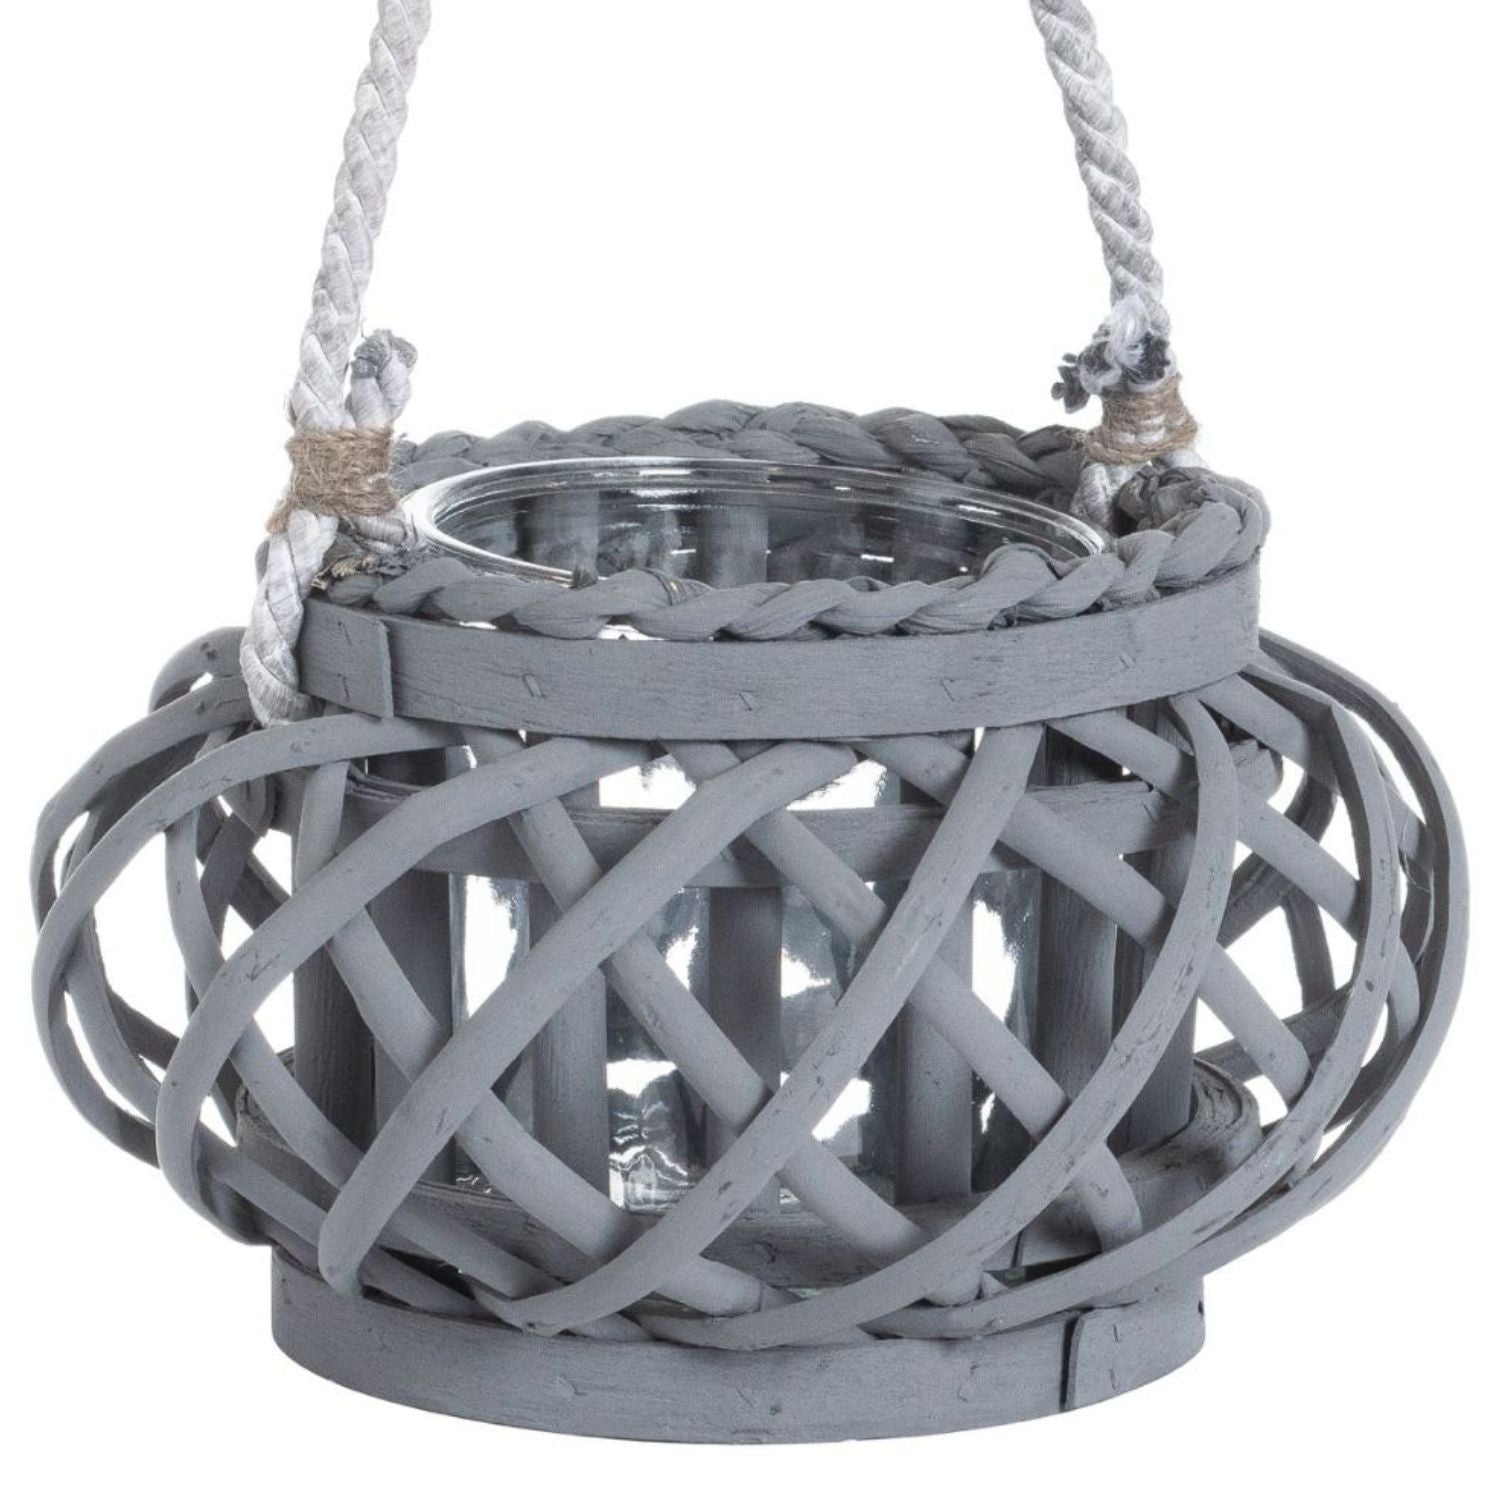 Large Wicker Basket Hurricane Lantern - Grey